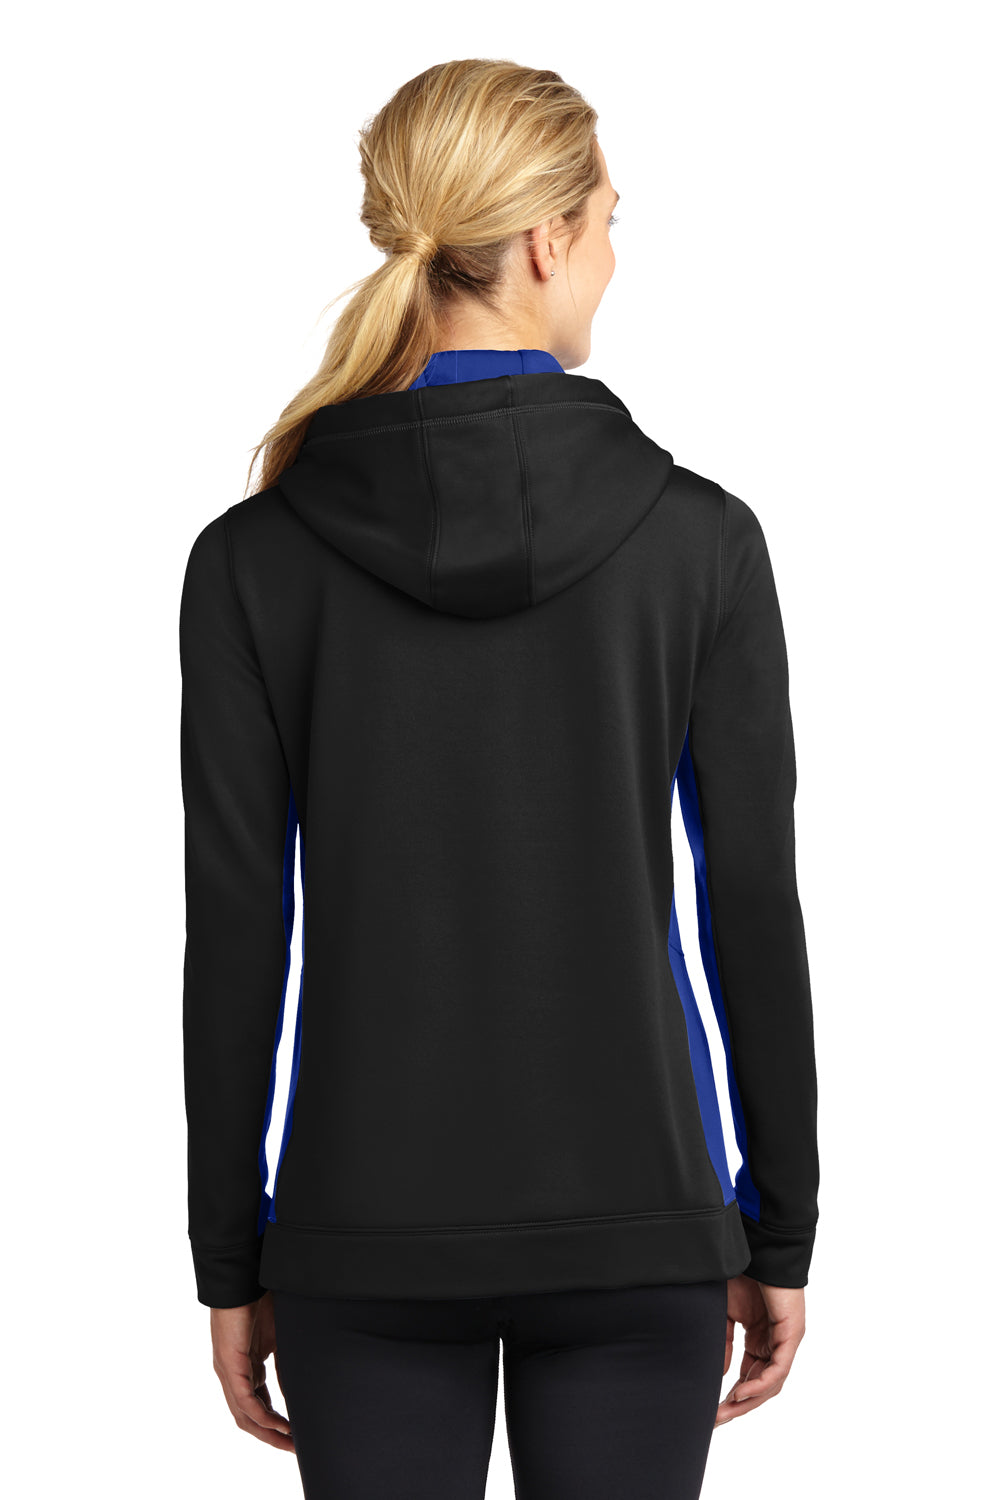 Sport-Tek LST235 Womens Sport-Wick Moisture Wicking Fleece Hooded Sweatshirt Hoodie Black/Royal Blue Back